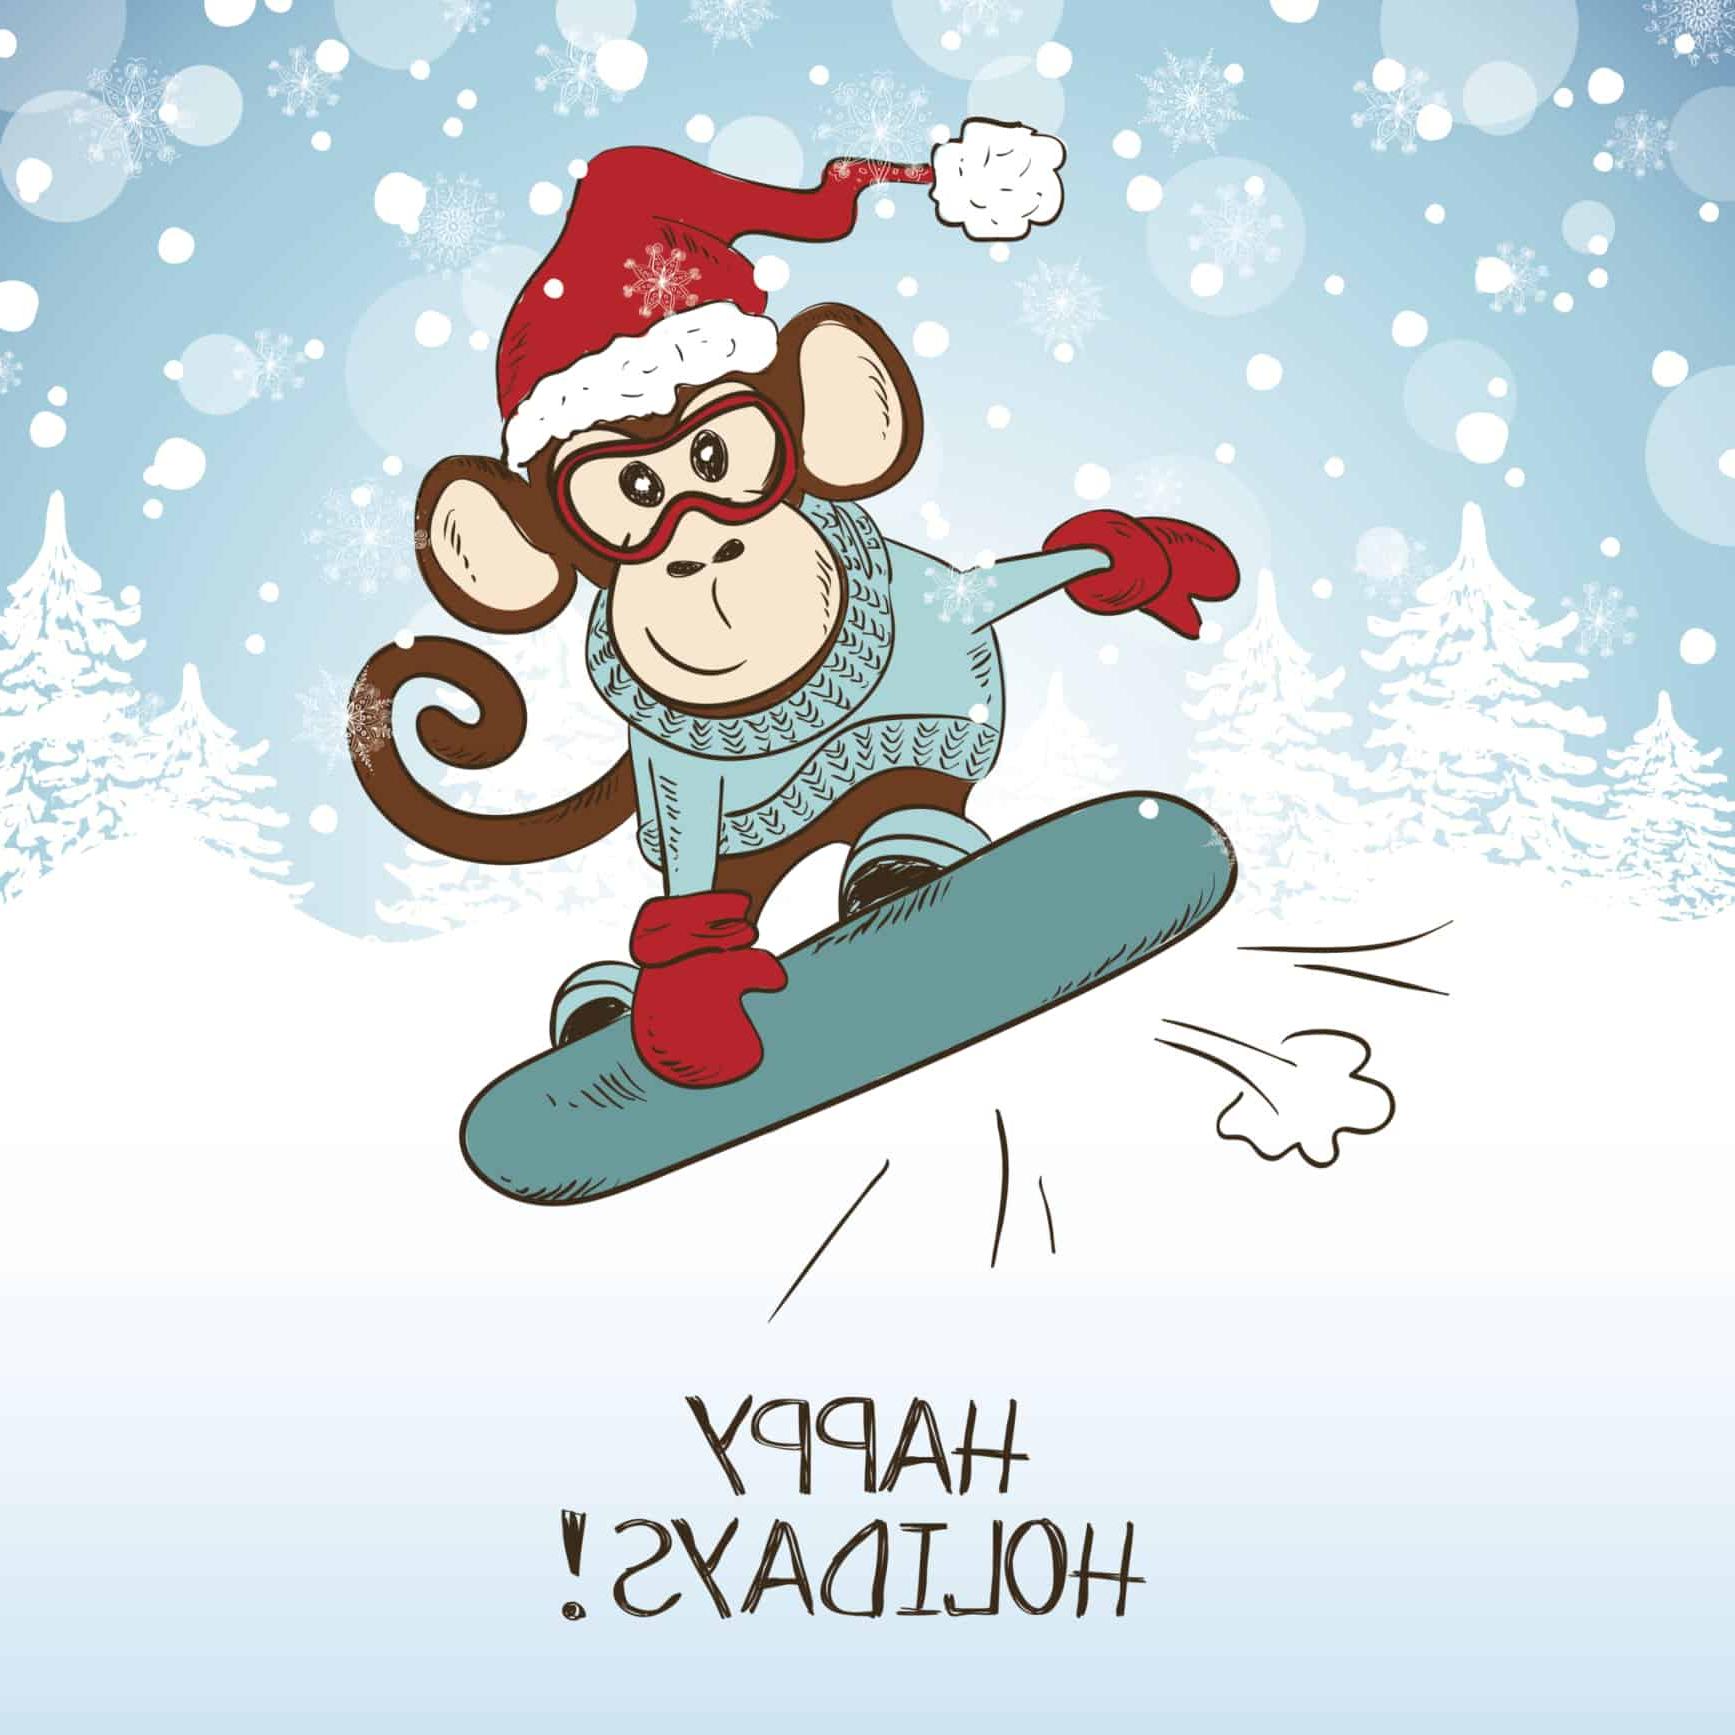 节日快乐! 滑雪板上的猴子